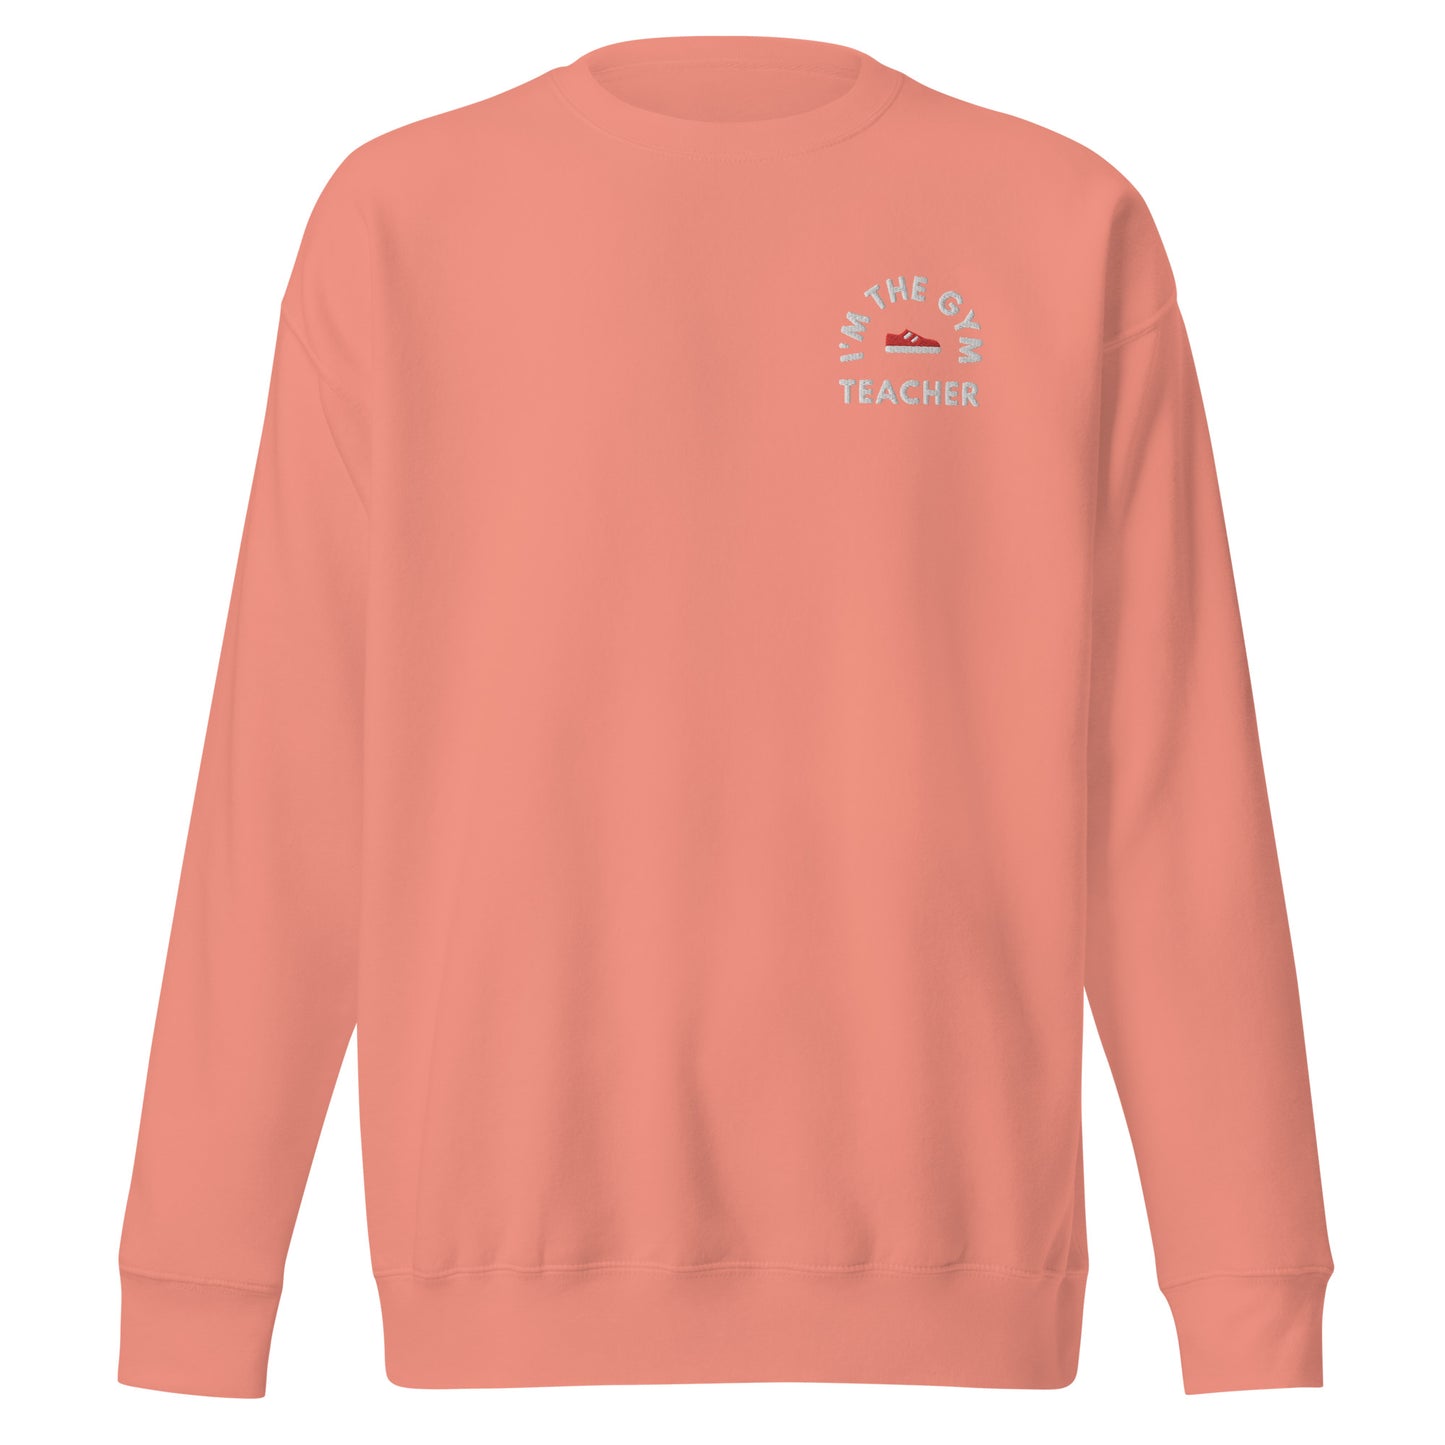 Gym Teacher - Unisex Premium Sweatshirt